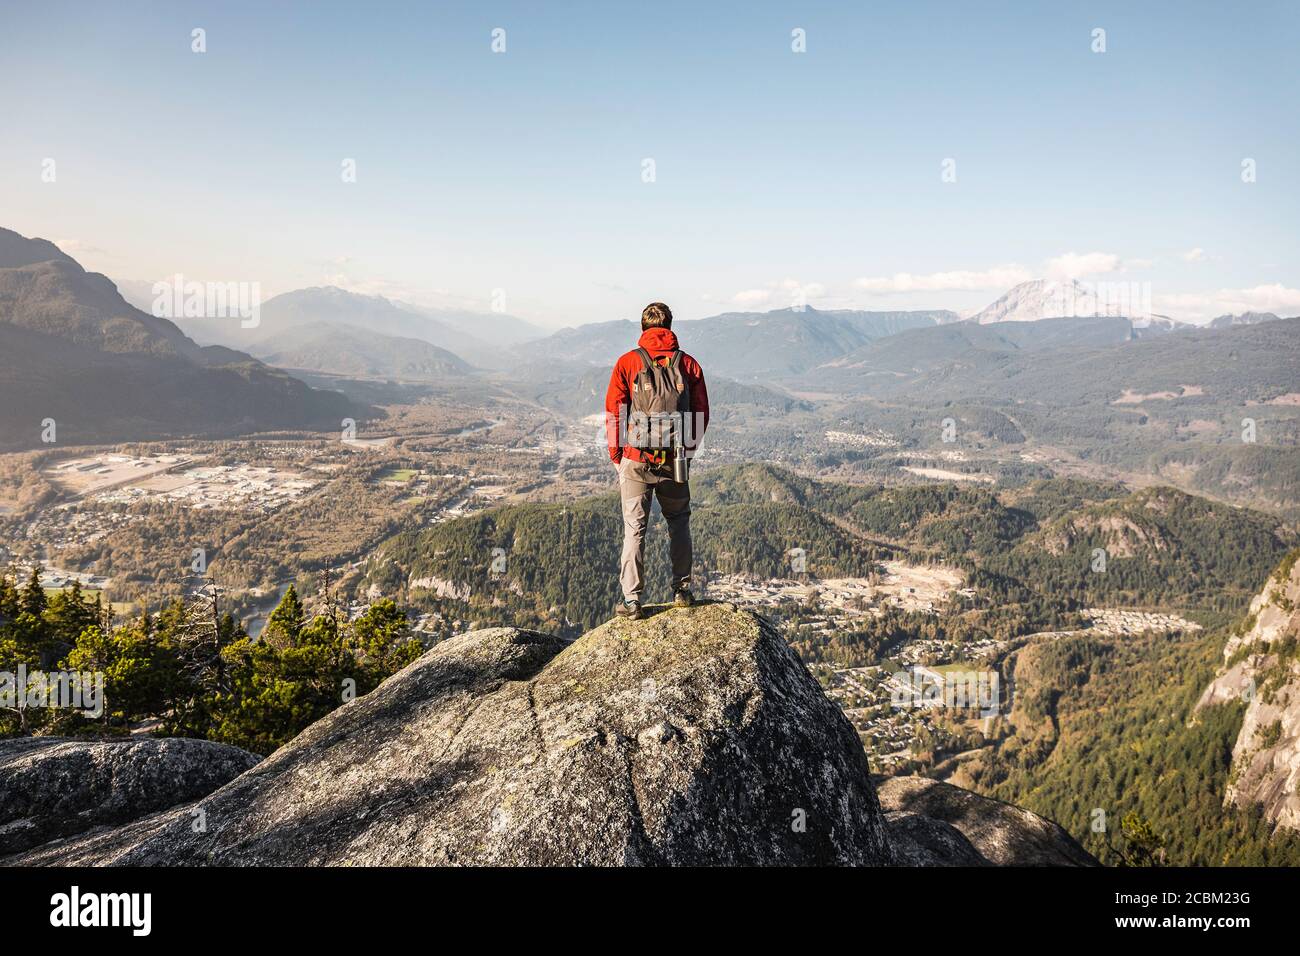 Homme debout en montagne, regardant la vue, Stawamus Chef, surplombant la baie Howe Sound, Squamish, Colombie-Britannique, Canada Banque D'Images